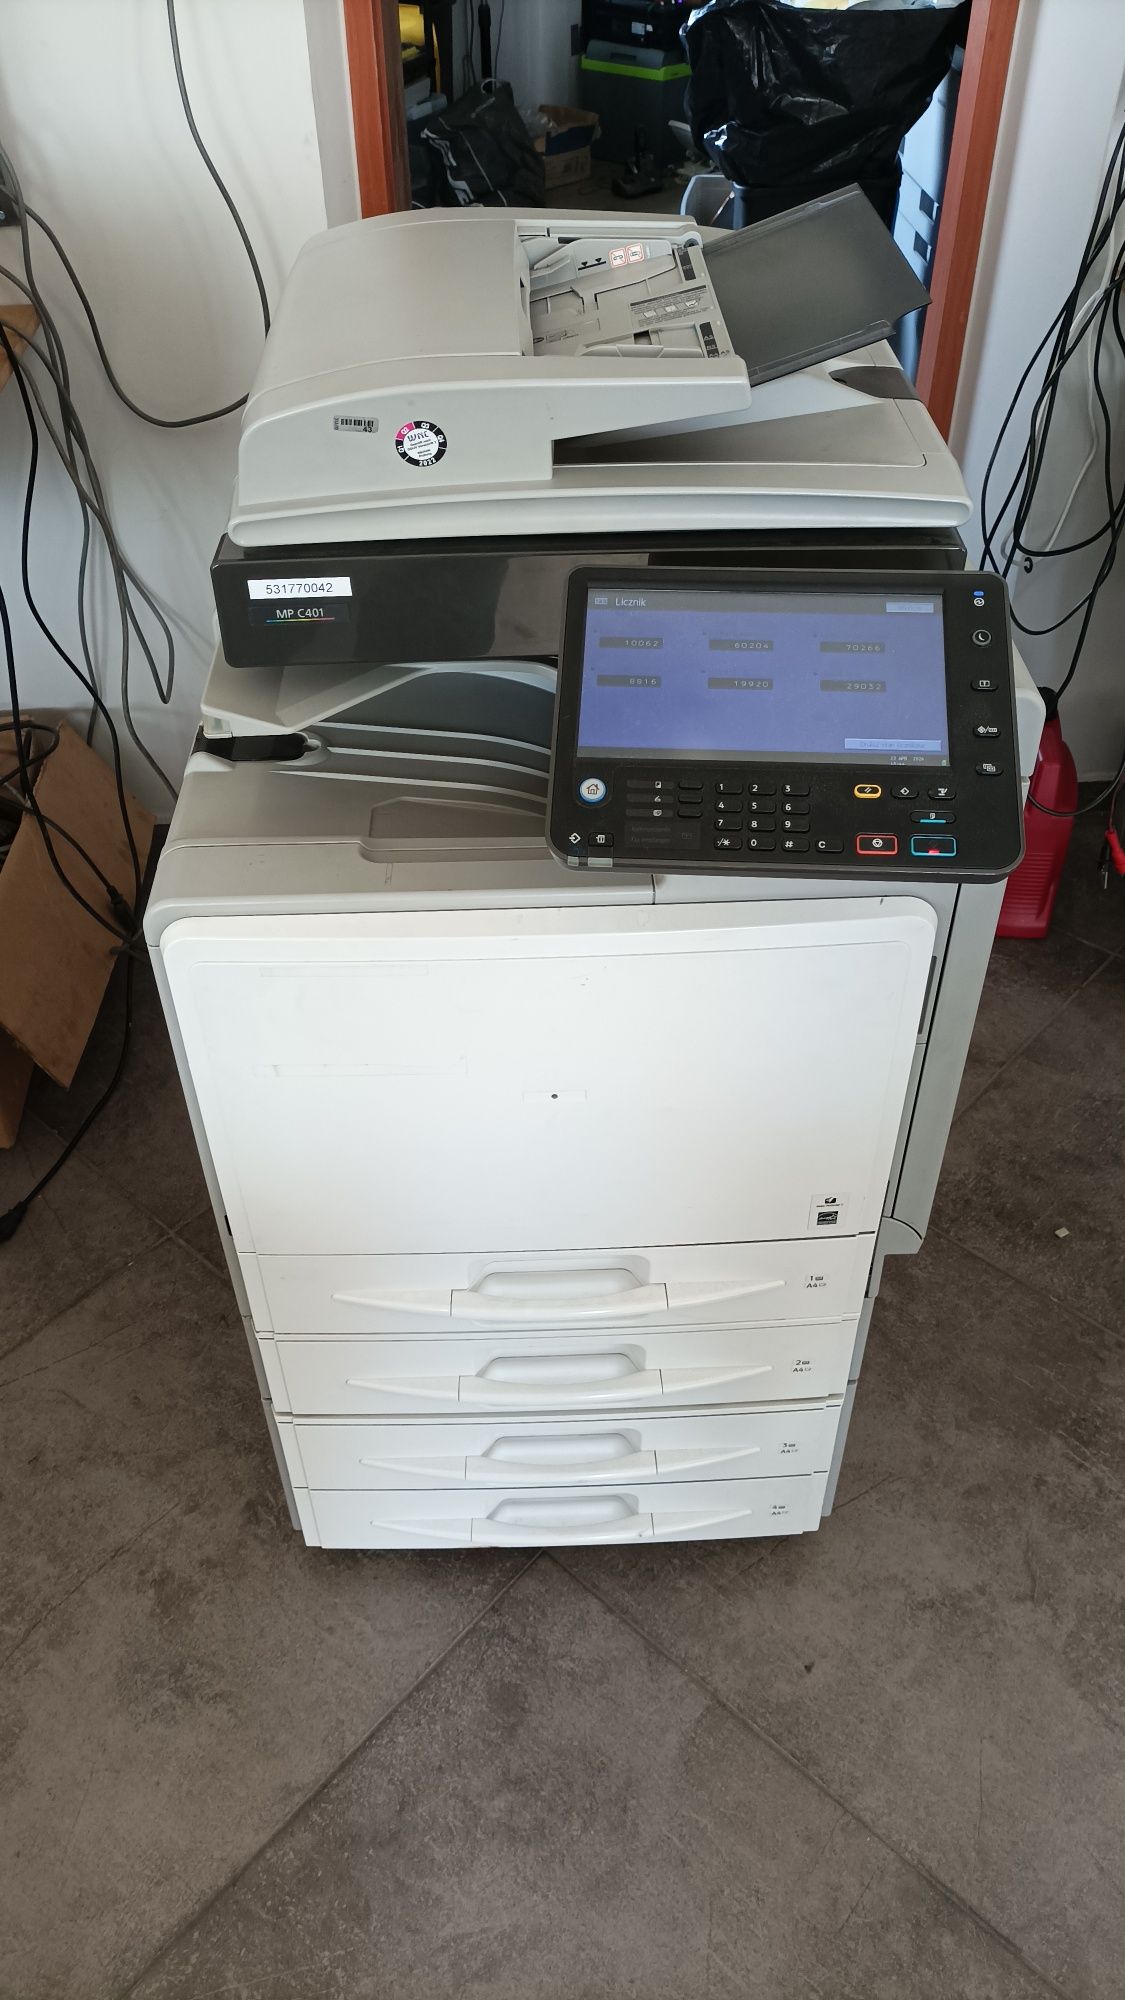 Urządzenie wielofunkcyjne Ricoh MP C401 drukarka skaner ksero Faktura